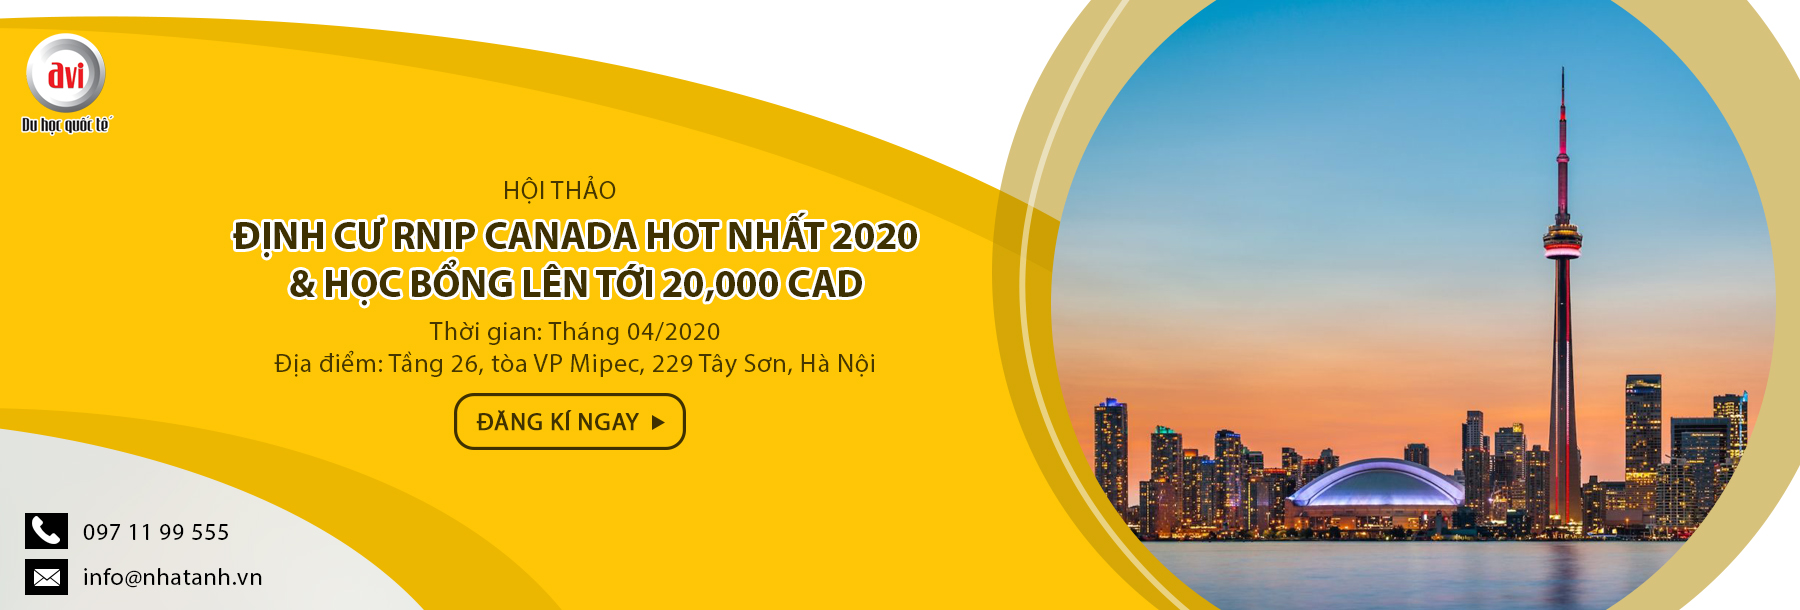 Hội thảo Định cư RNIP Canada HOT nhất 2020 và học bổng lên tới 20,000 CAD